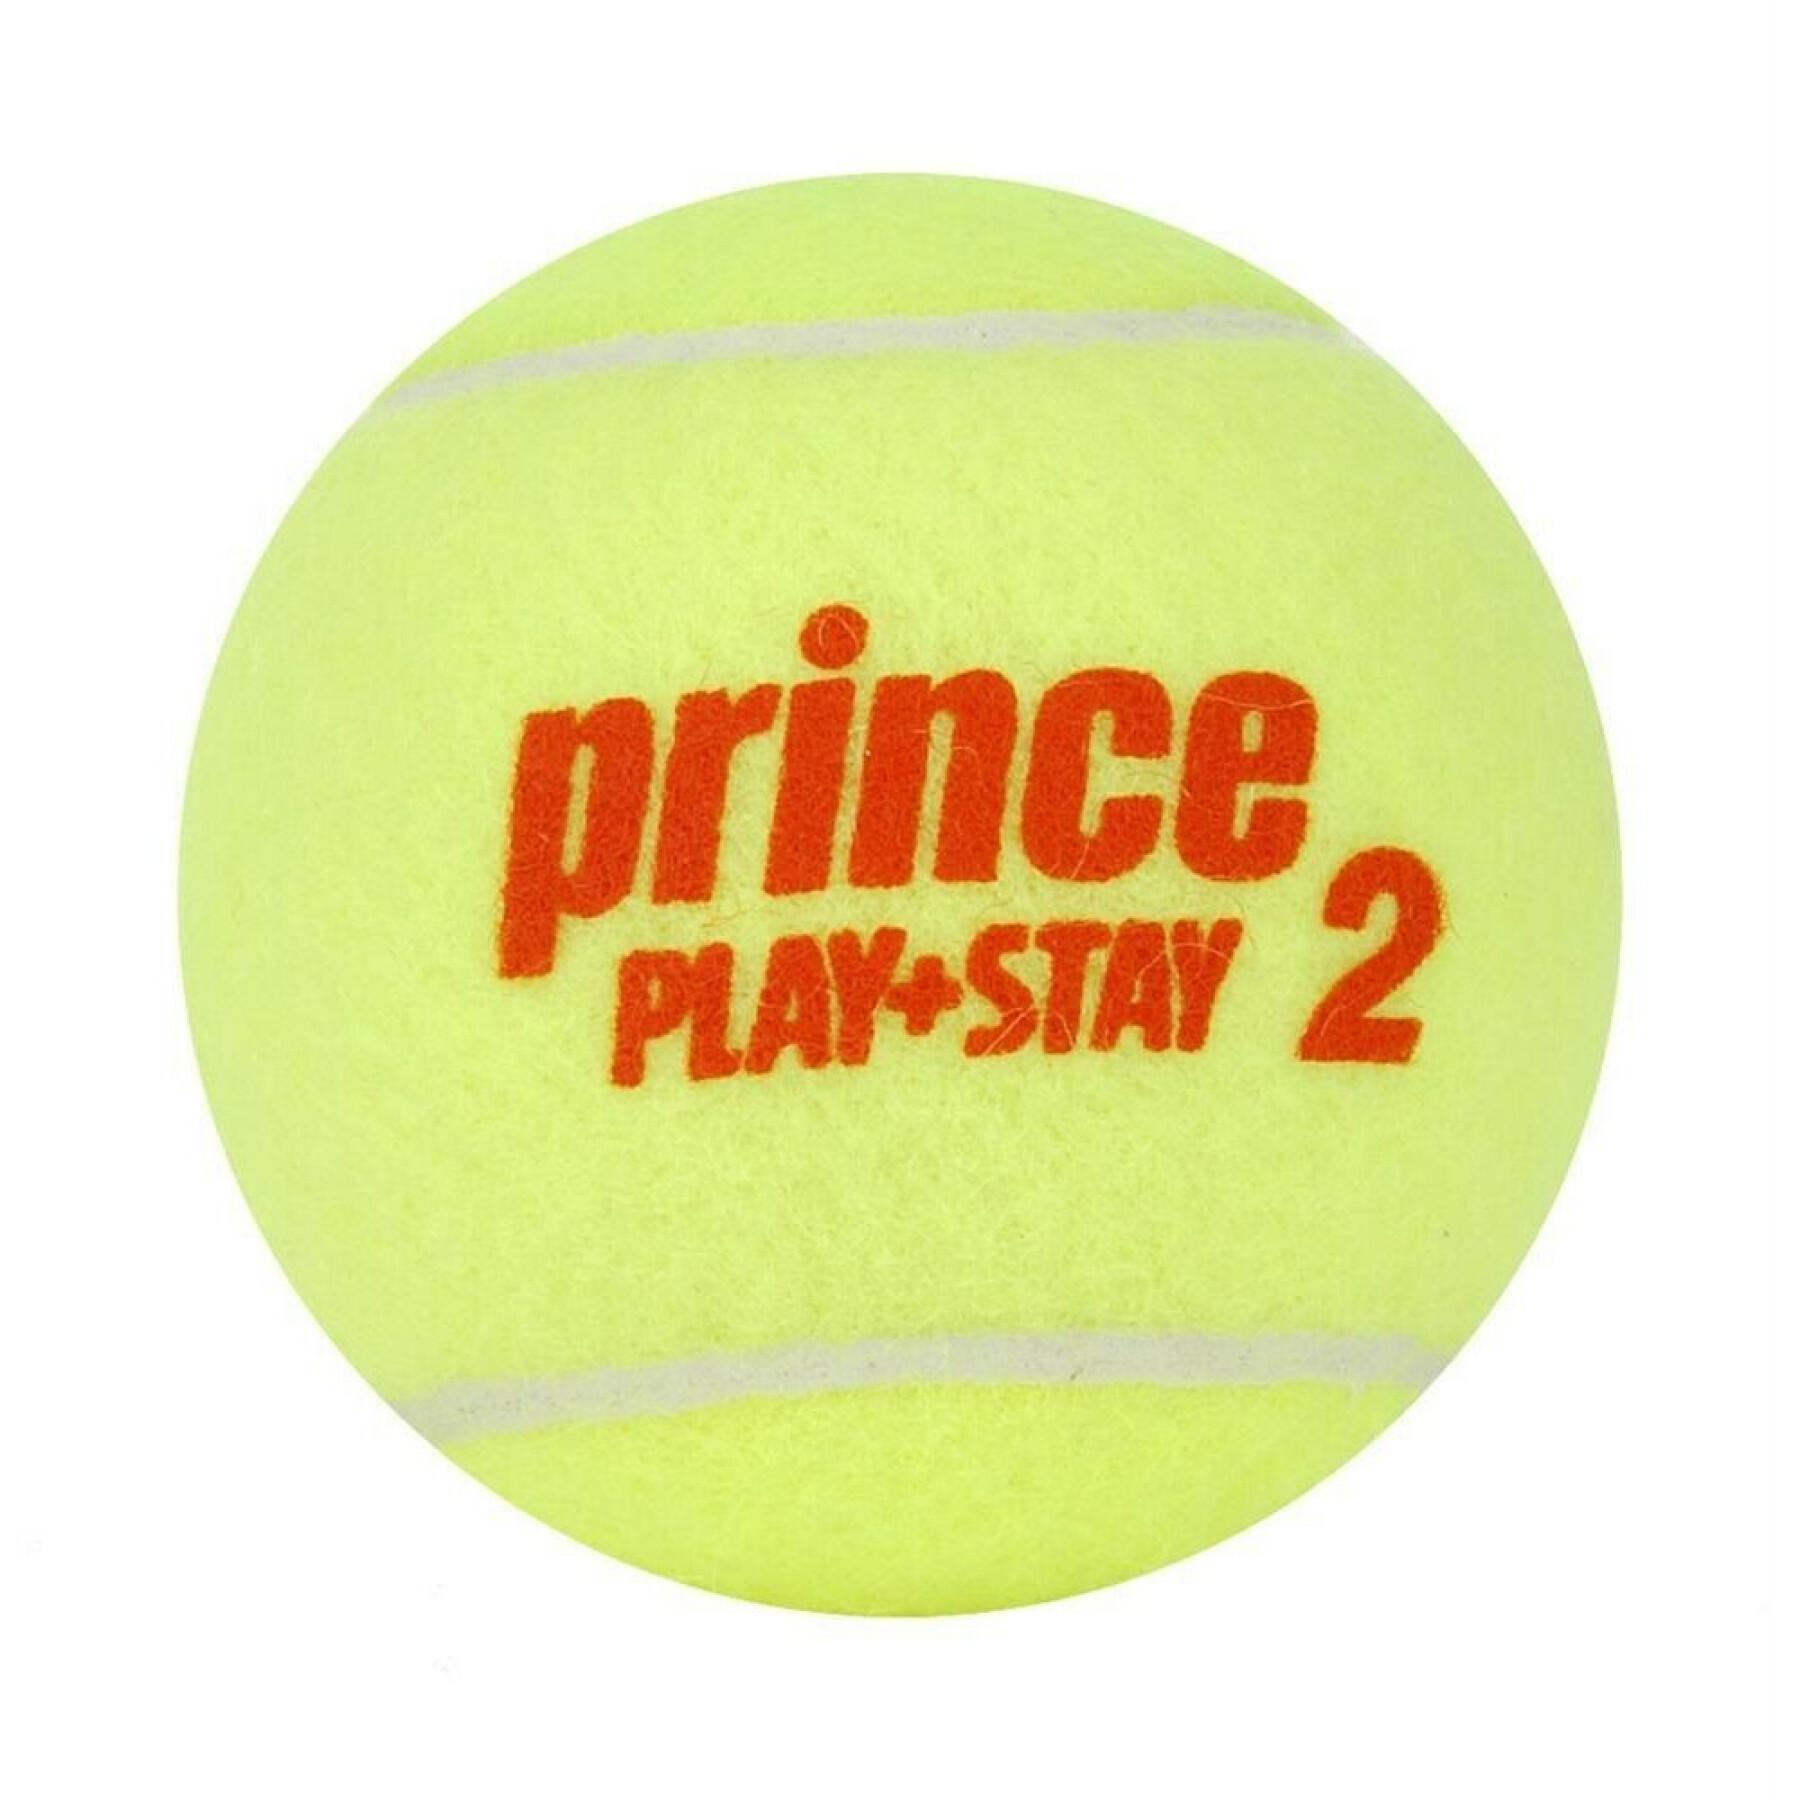 Tuba z 3 piłkami tenisowymi Prince Play & Stay - stage 2